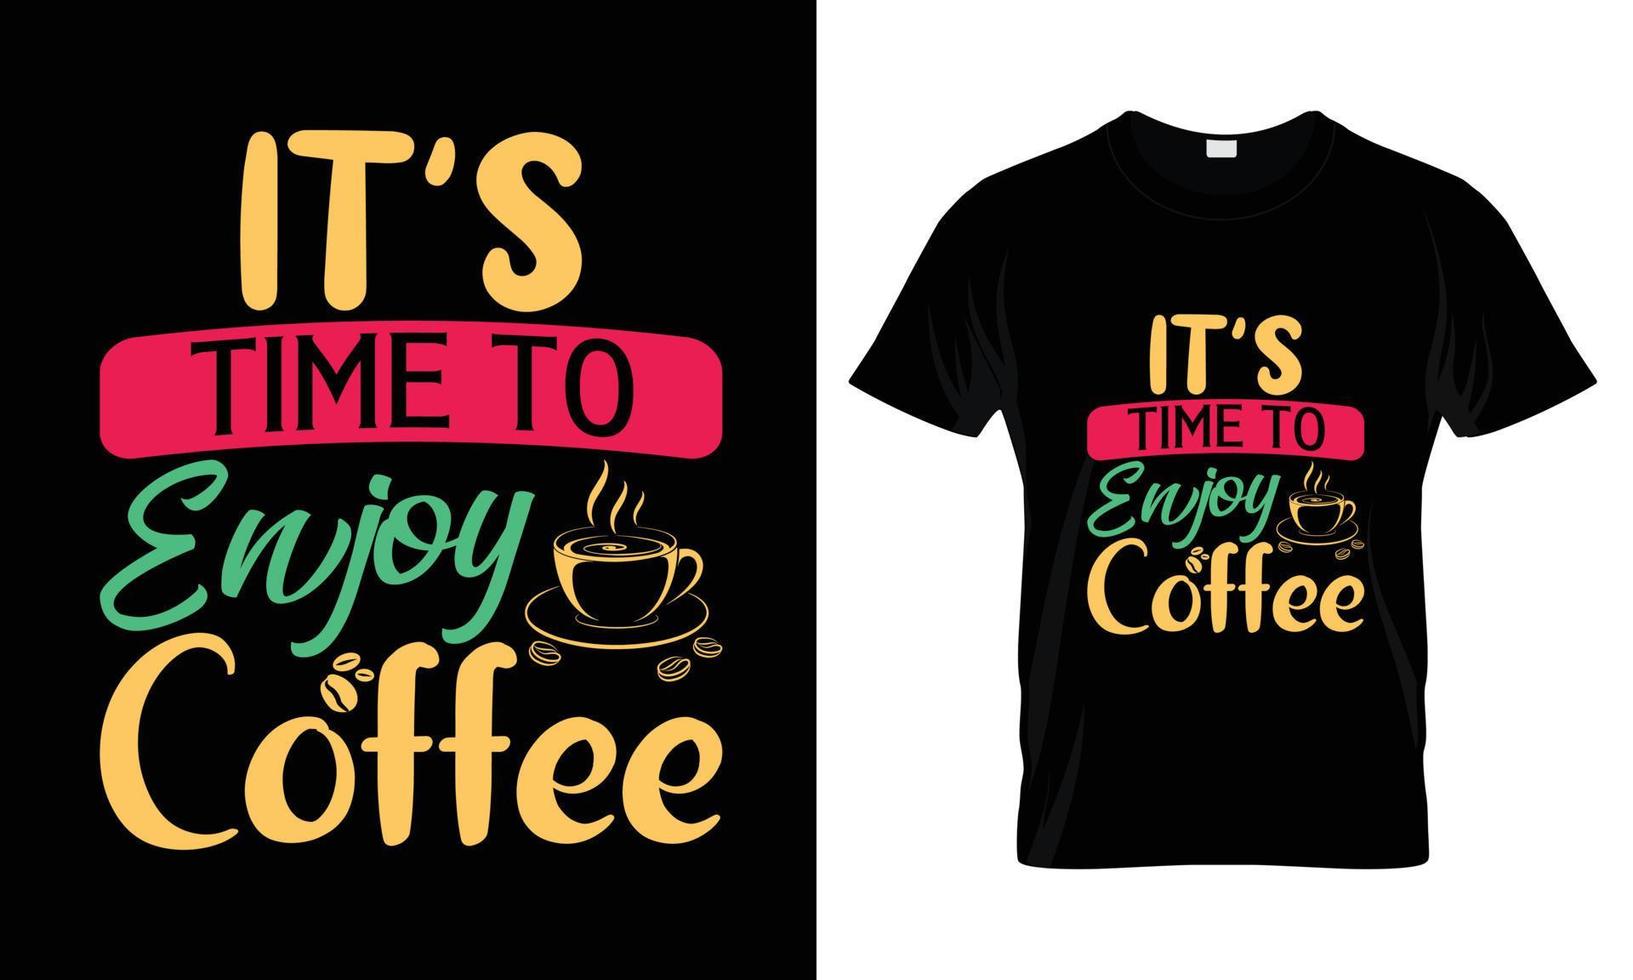 Es ist Zeit, Kaffee-Schriftzug-Typografie-T-Shirt-Design zu genießen vektor